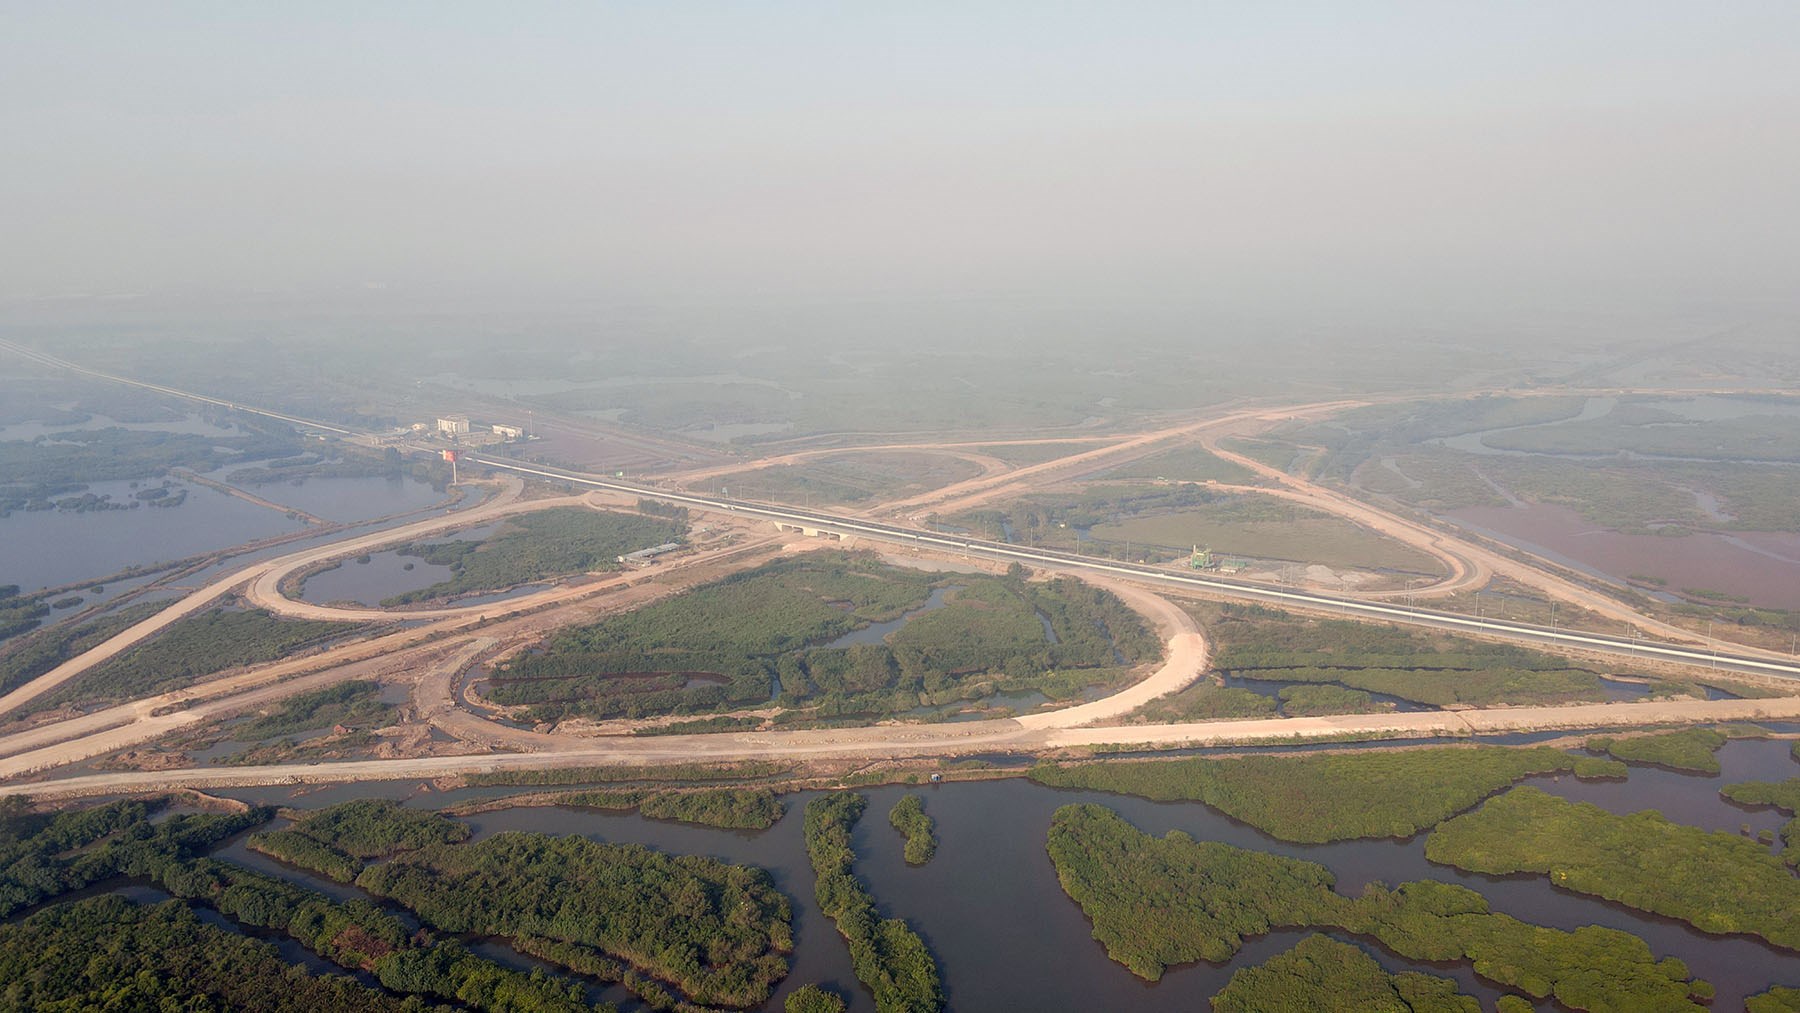 Hình ảnh nút giao Đầm Nhà Mạc lớn nhất tỉnh Quảng Ninh đang xây dựng